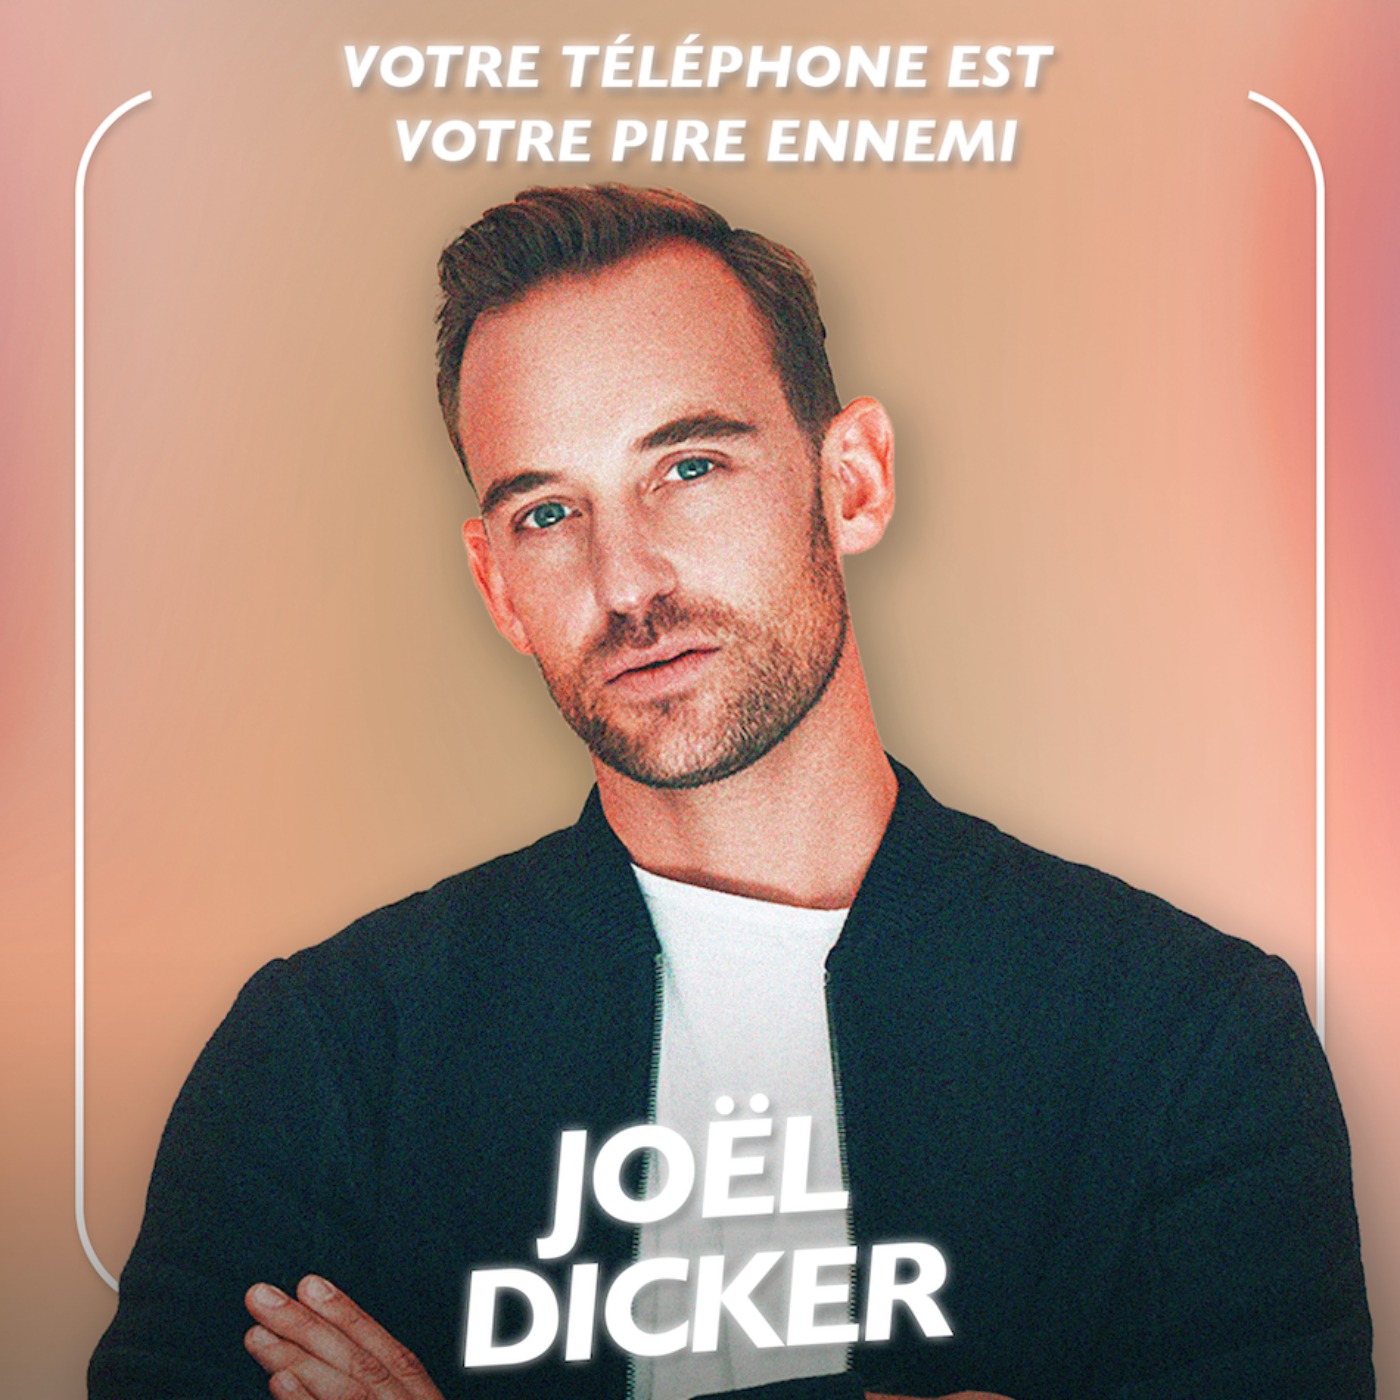 [MOMENT CLÉ] "Votre portable est votre pire ennemi" Joël Dicker